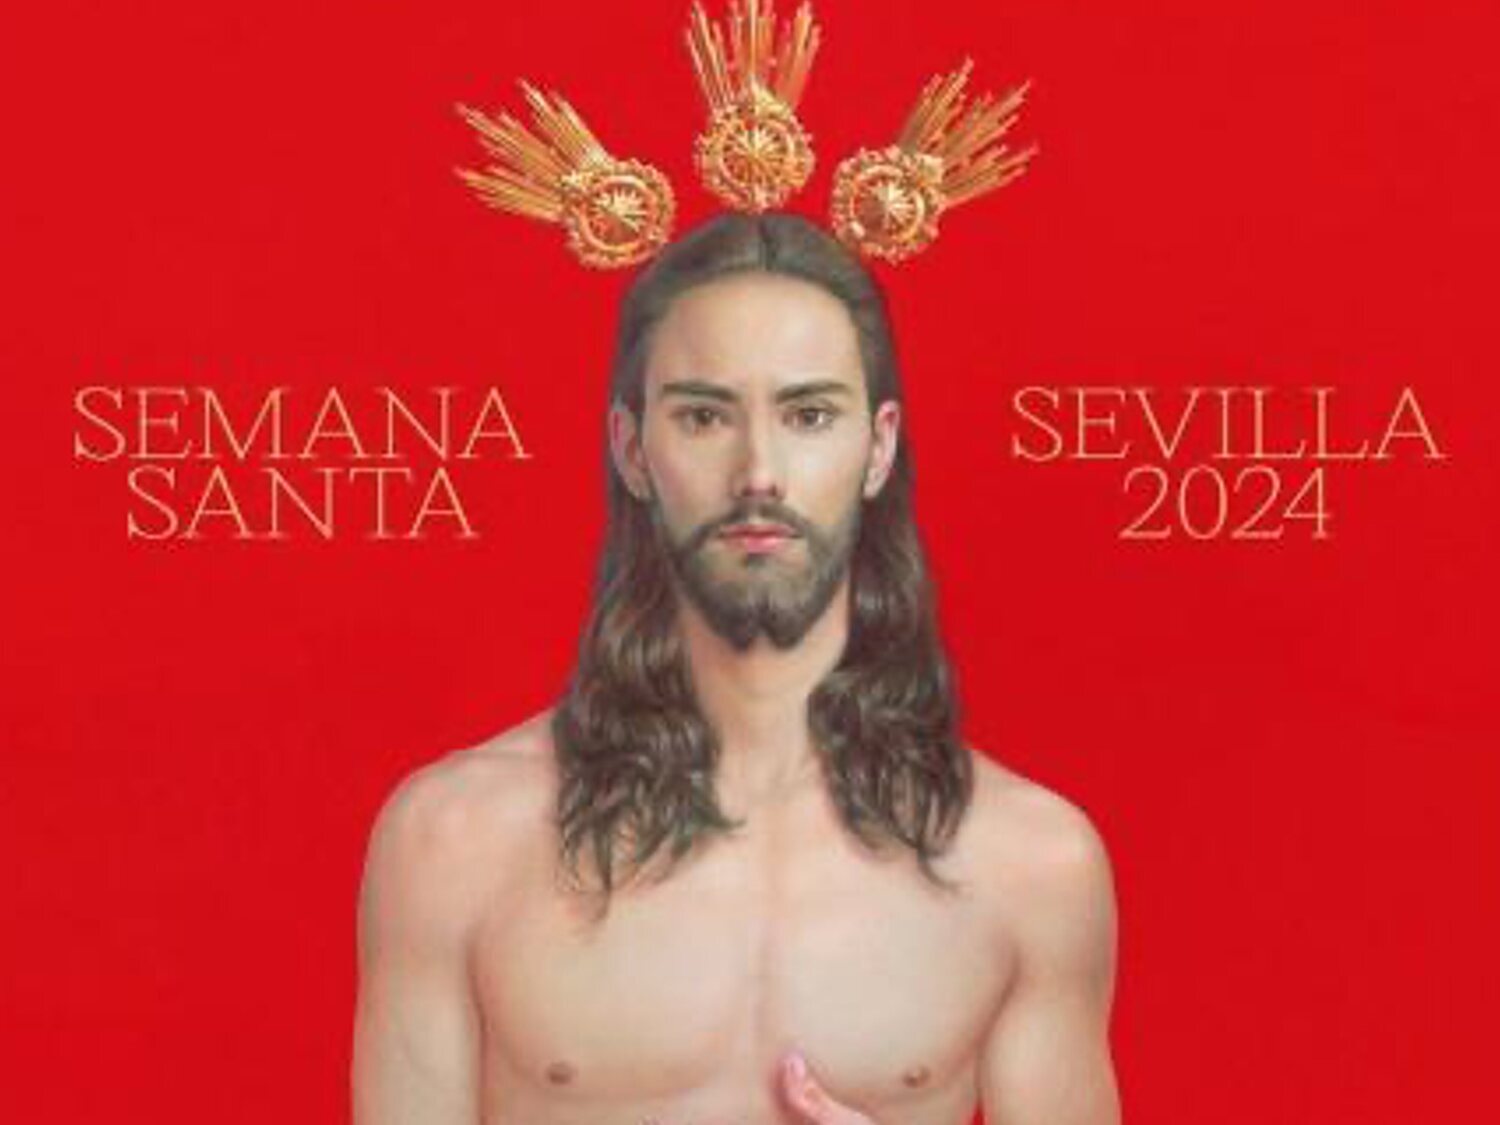 Polémica por el rompedor cartel de la Semana Santa de Sevilla 2024: "No la representa"